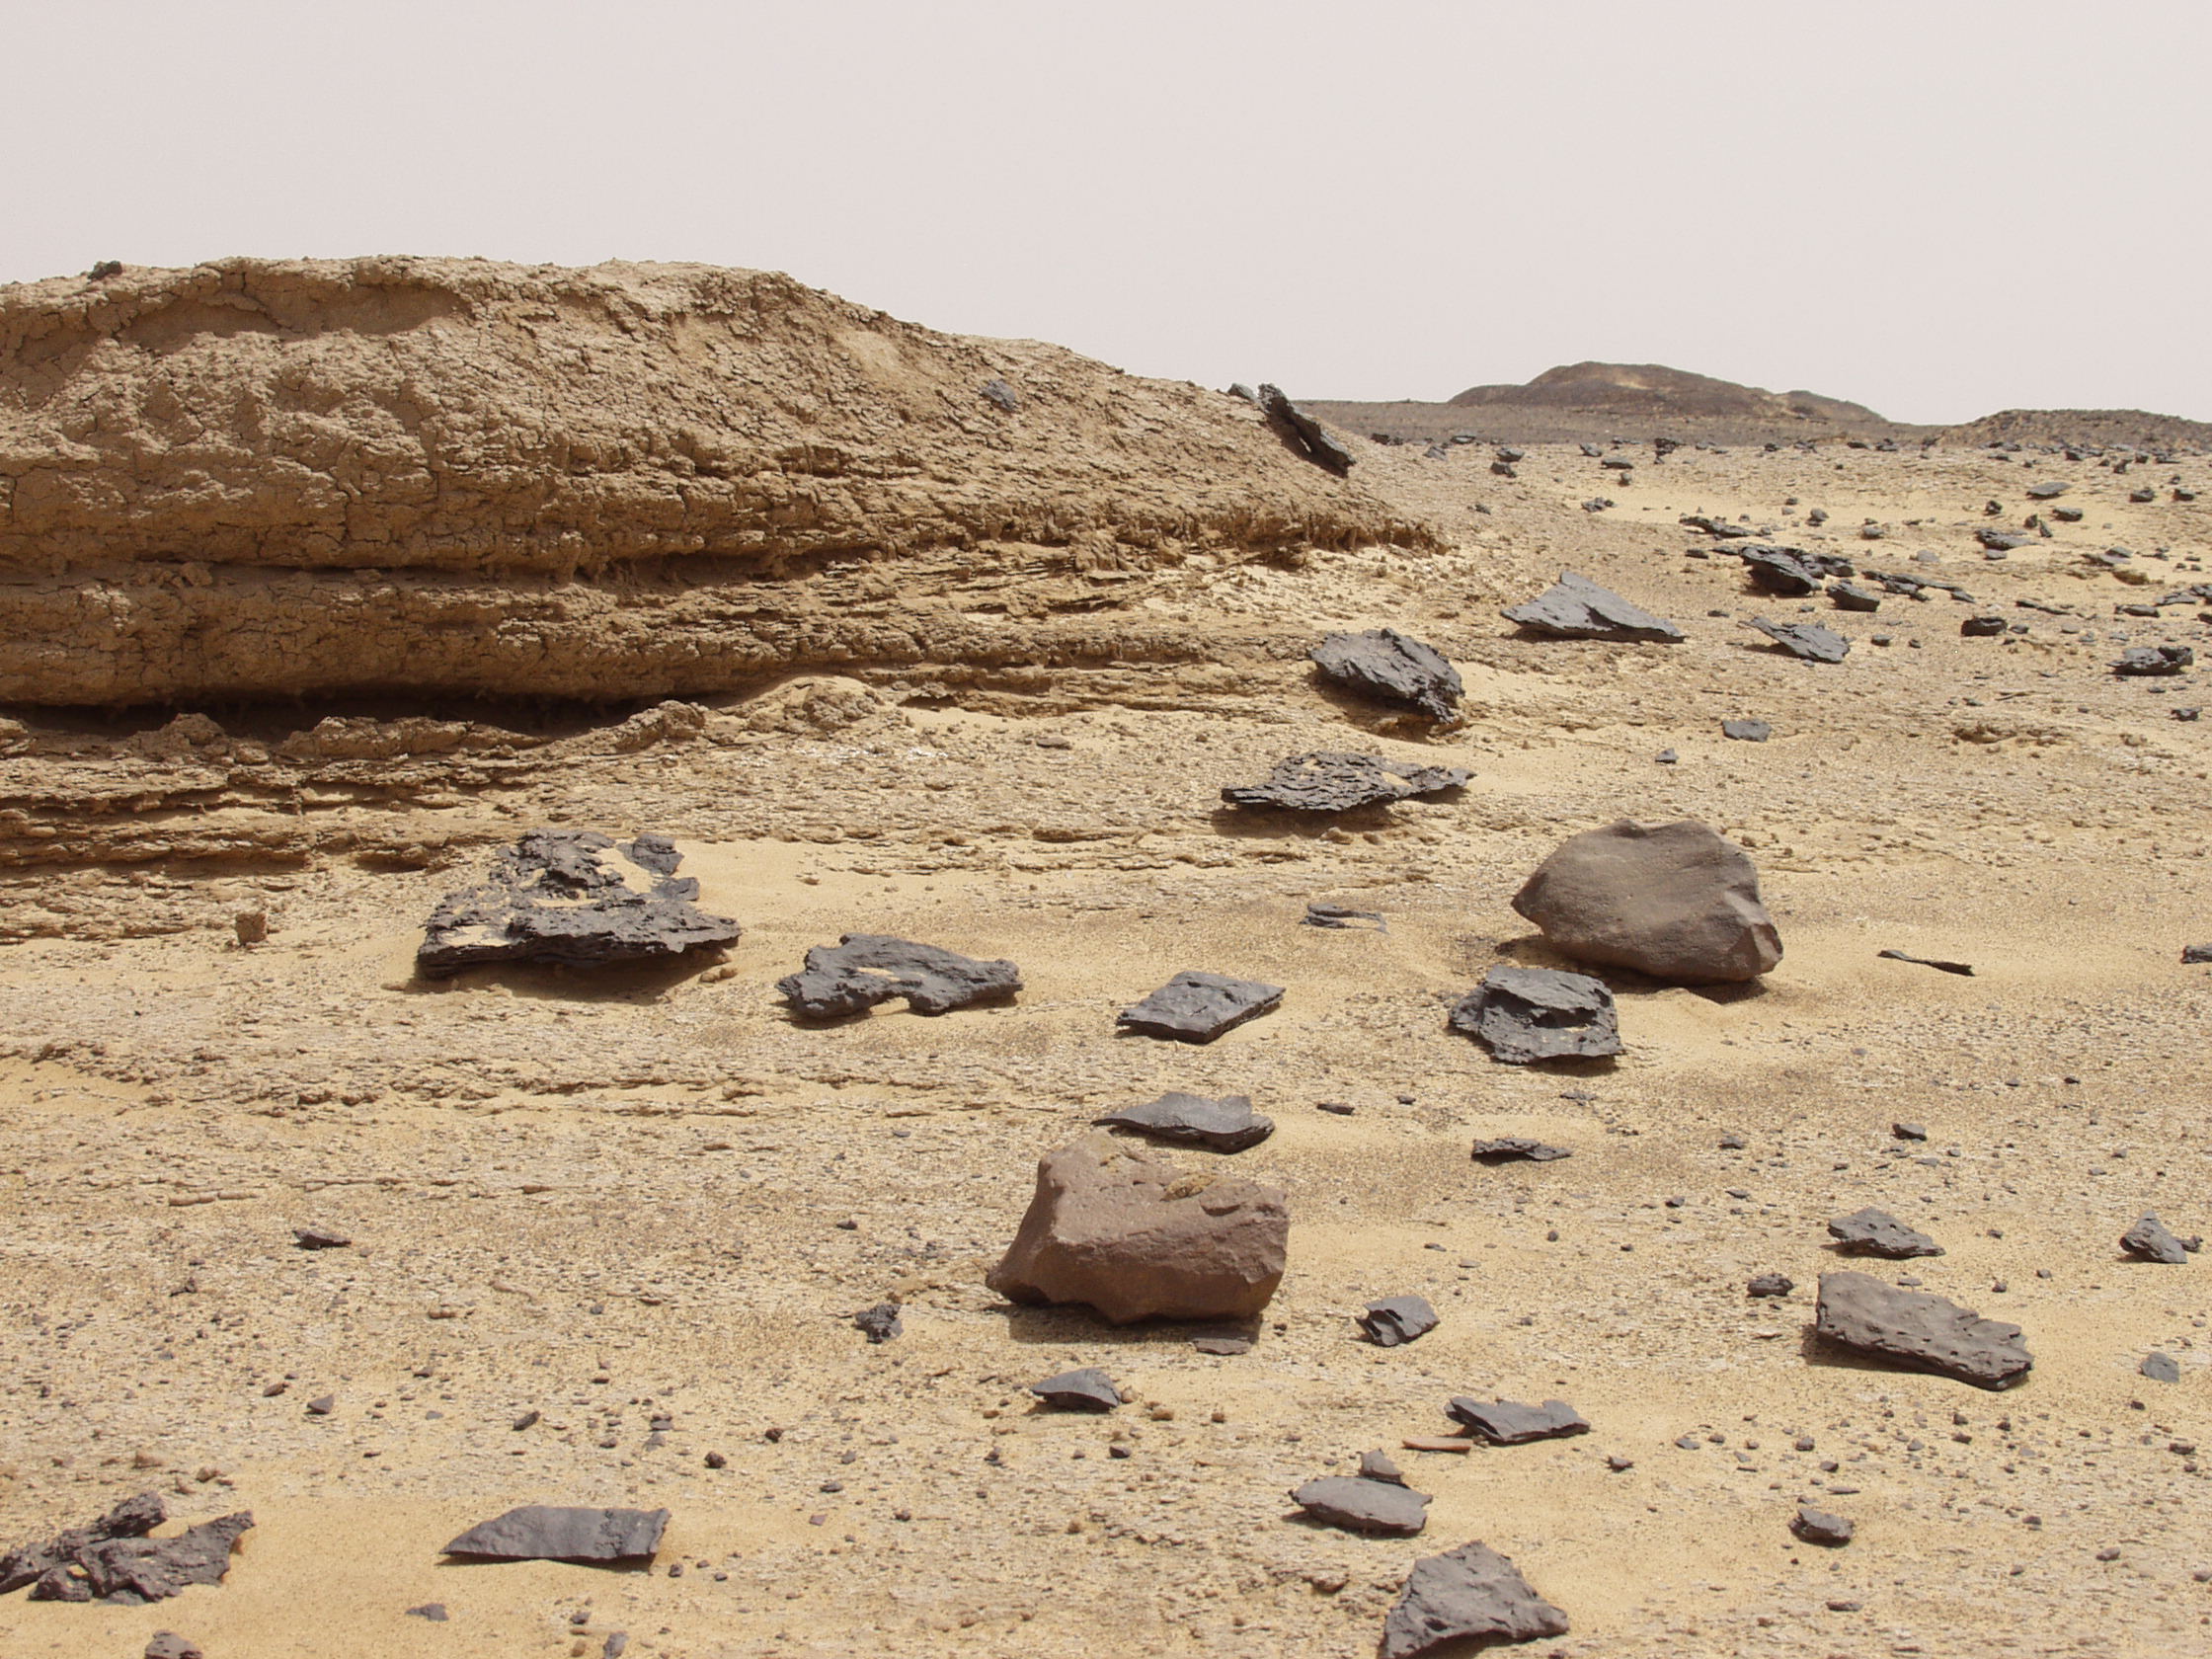 Dokumentace loveckých sídlišť v egyptské části Sahary. V sedimentech vyschlého jezera Mannsaf leží roztroušené nástroje epipaleolitu, v popředí dvě drtící desky. 